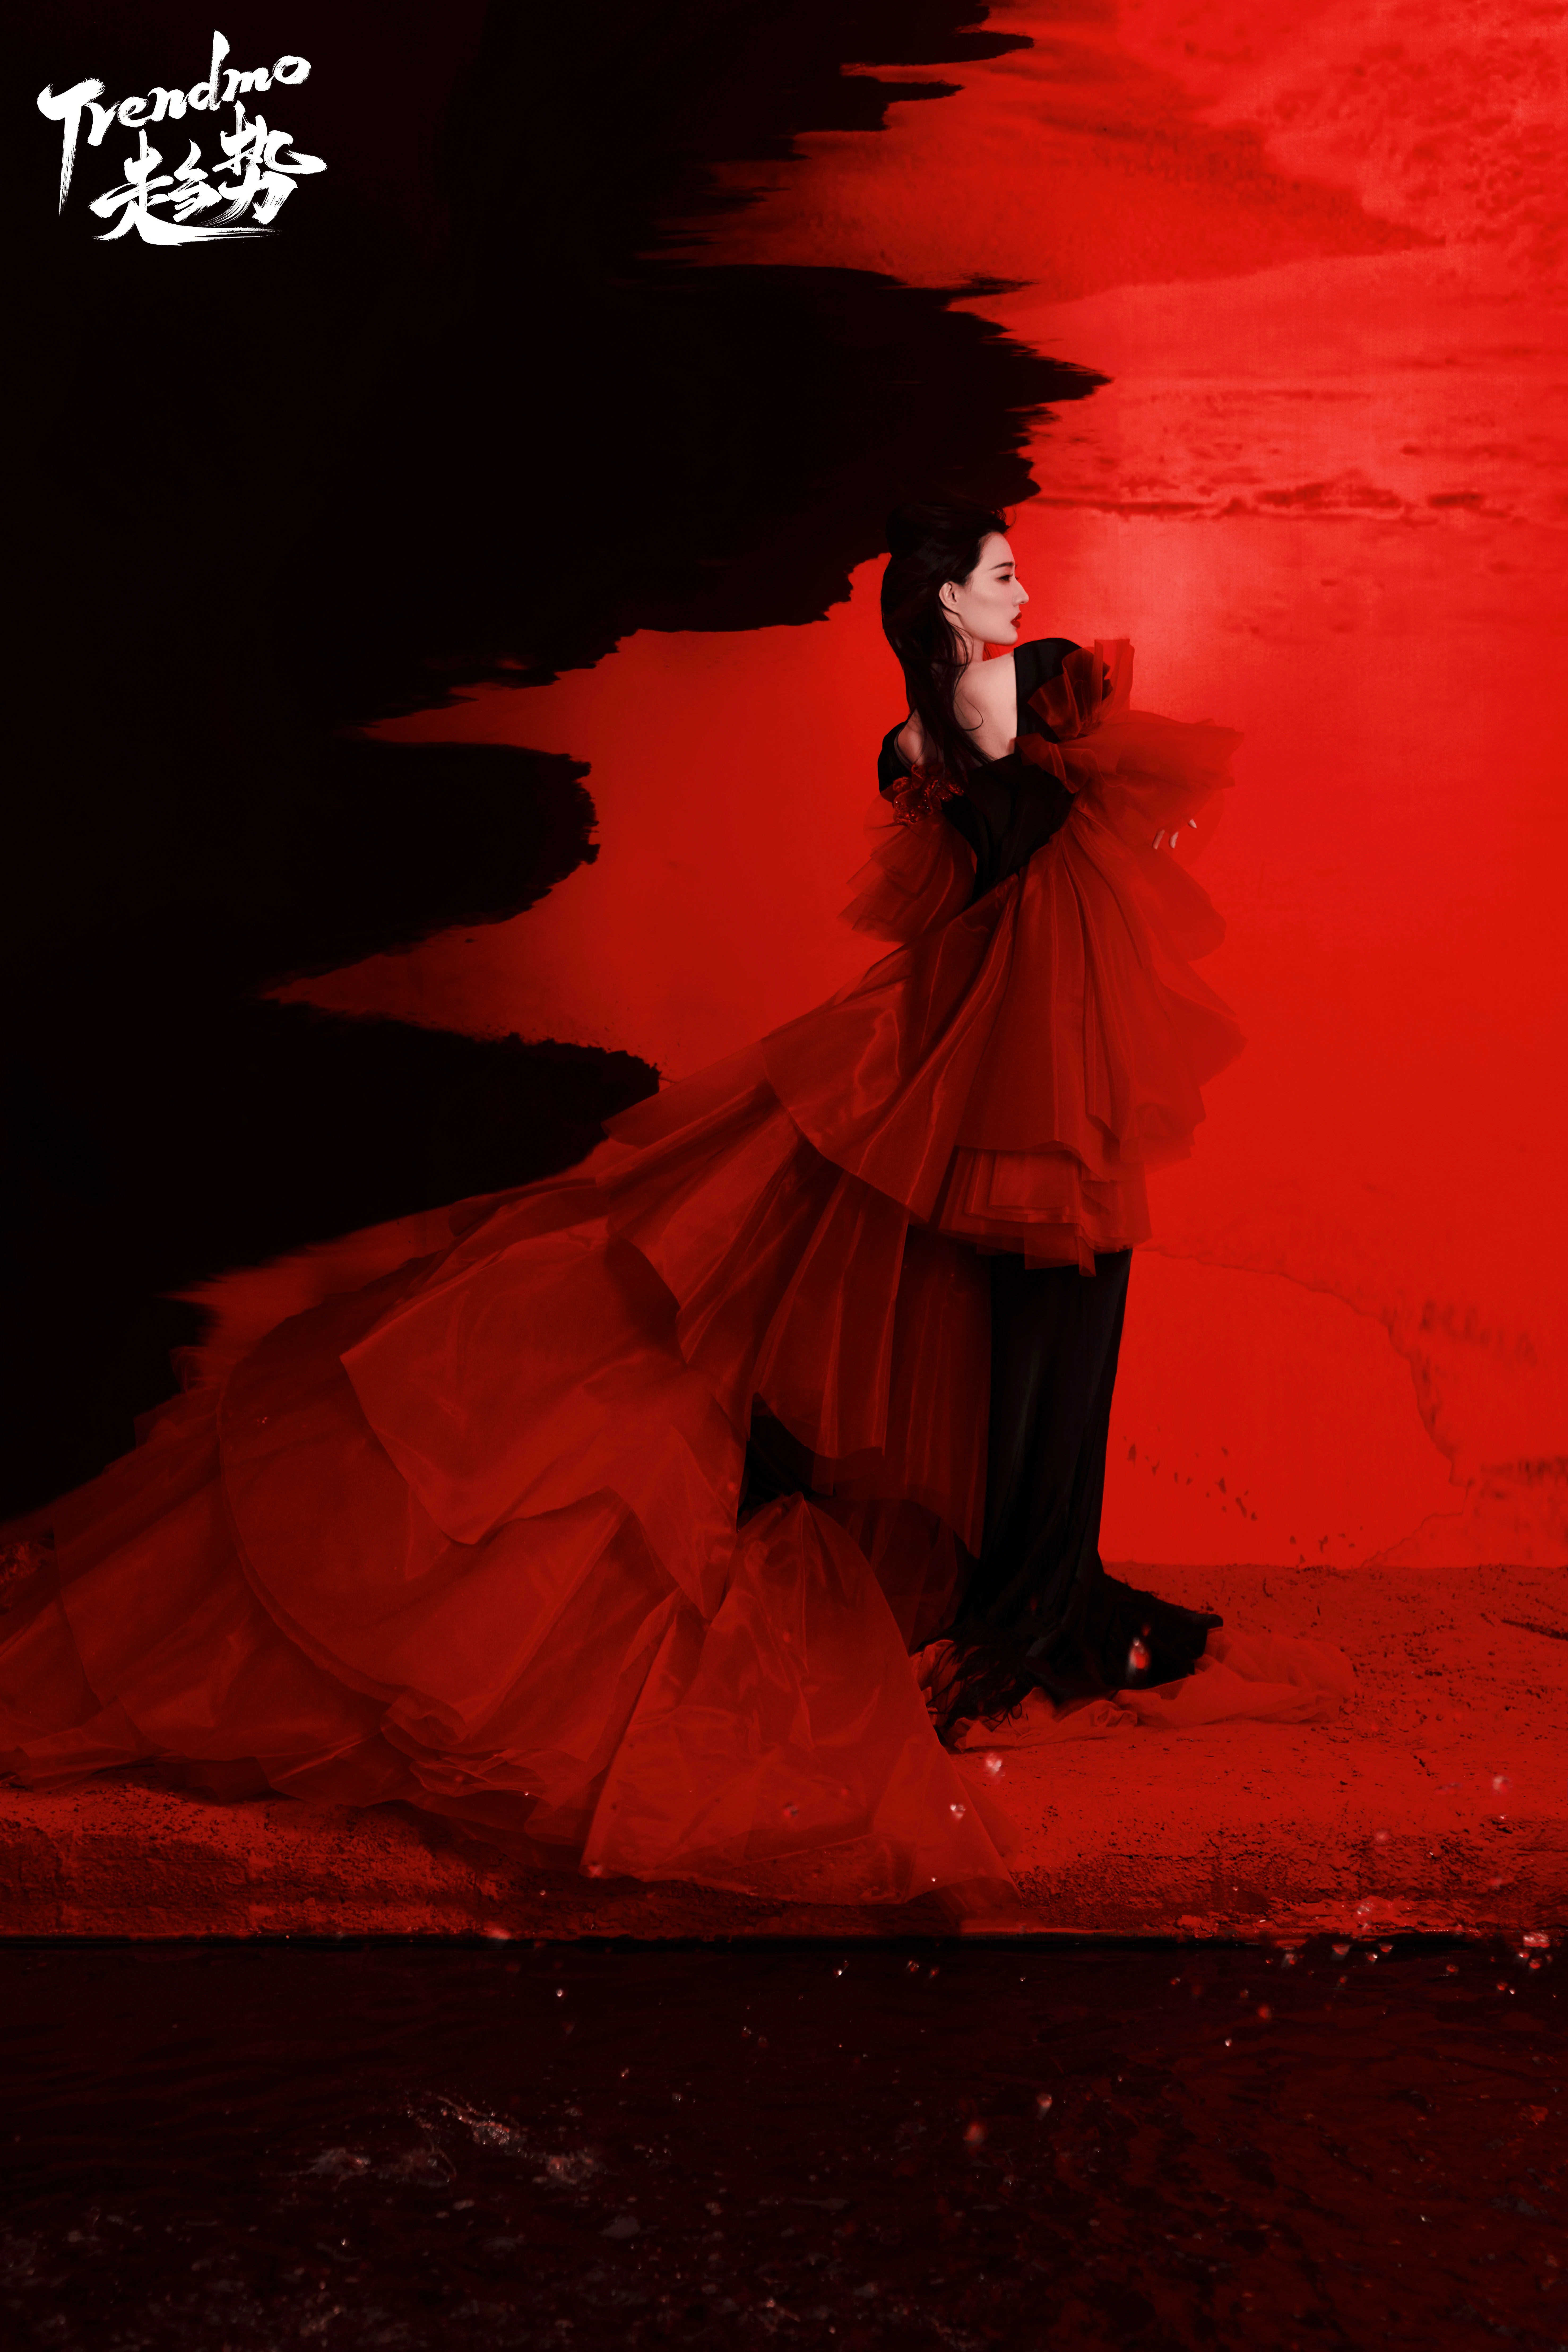 Trendmo趋势徐璐封面大片 红色长裙与黑色西装制服优雅迷人,16